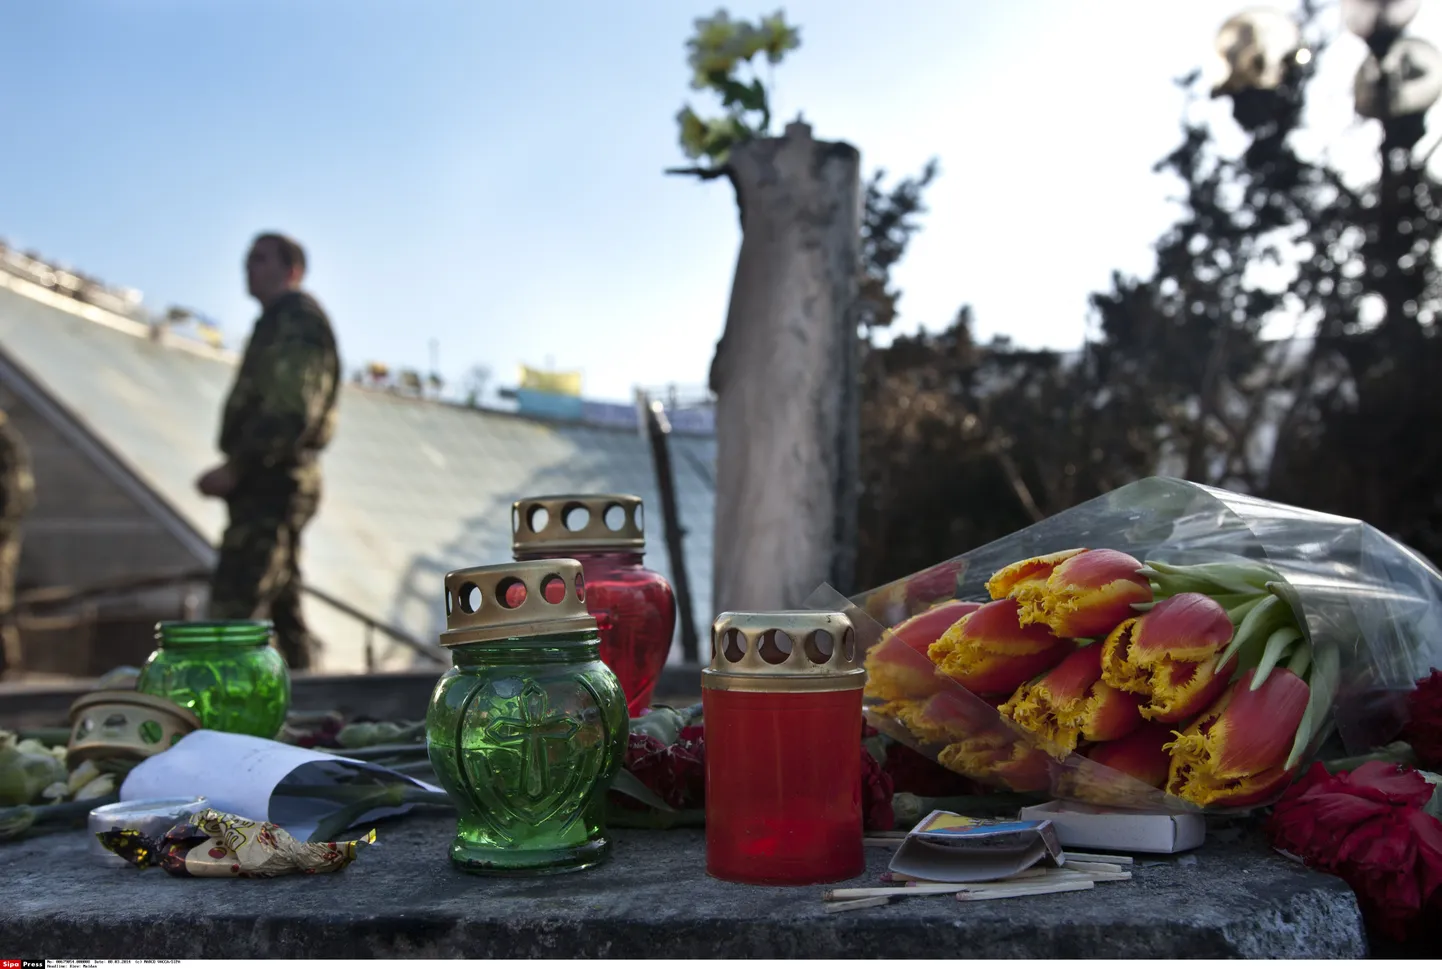 Kiievi Iseseisvuse väljakule viiakse endiselt lilli ja küünlaid hukkunute ja kadunute meenutamiseks.